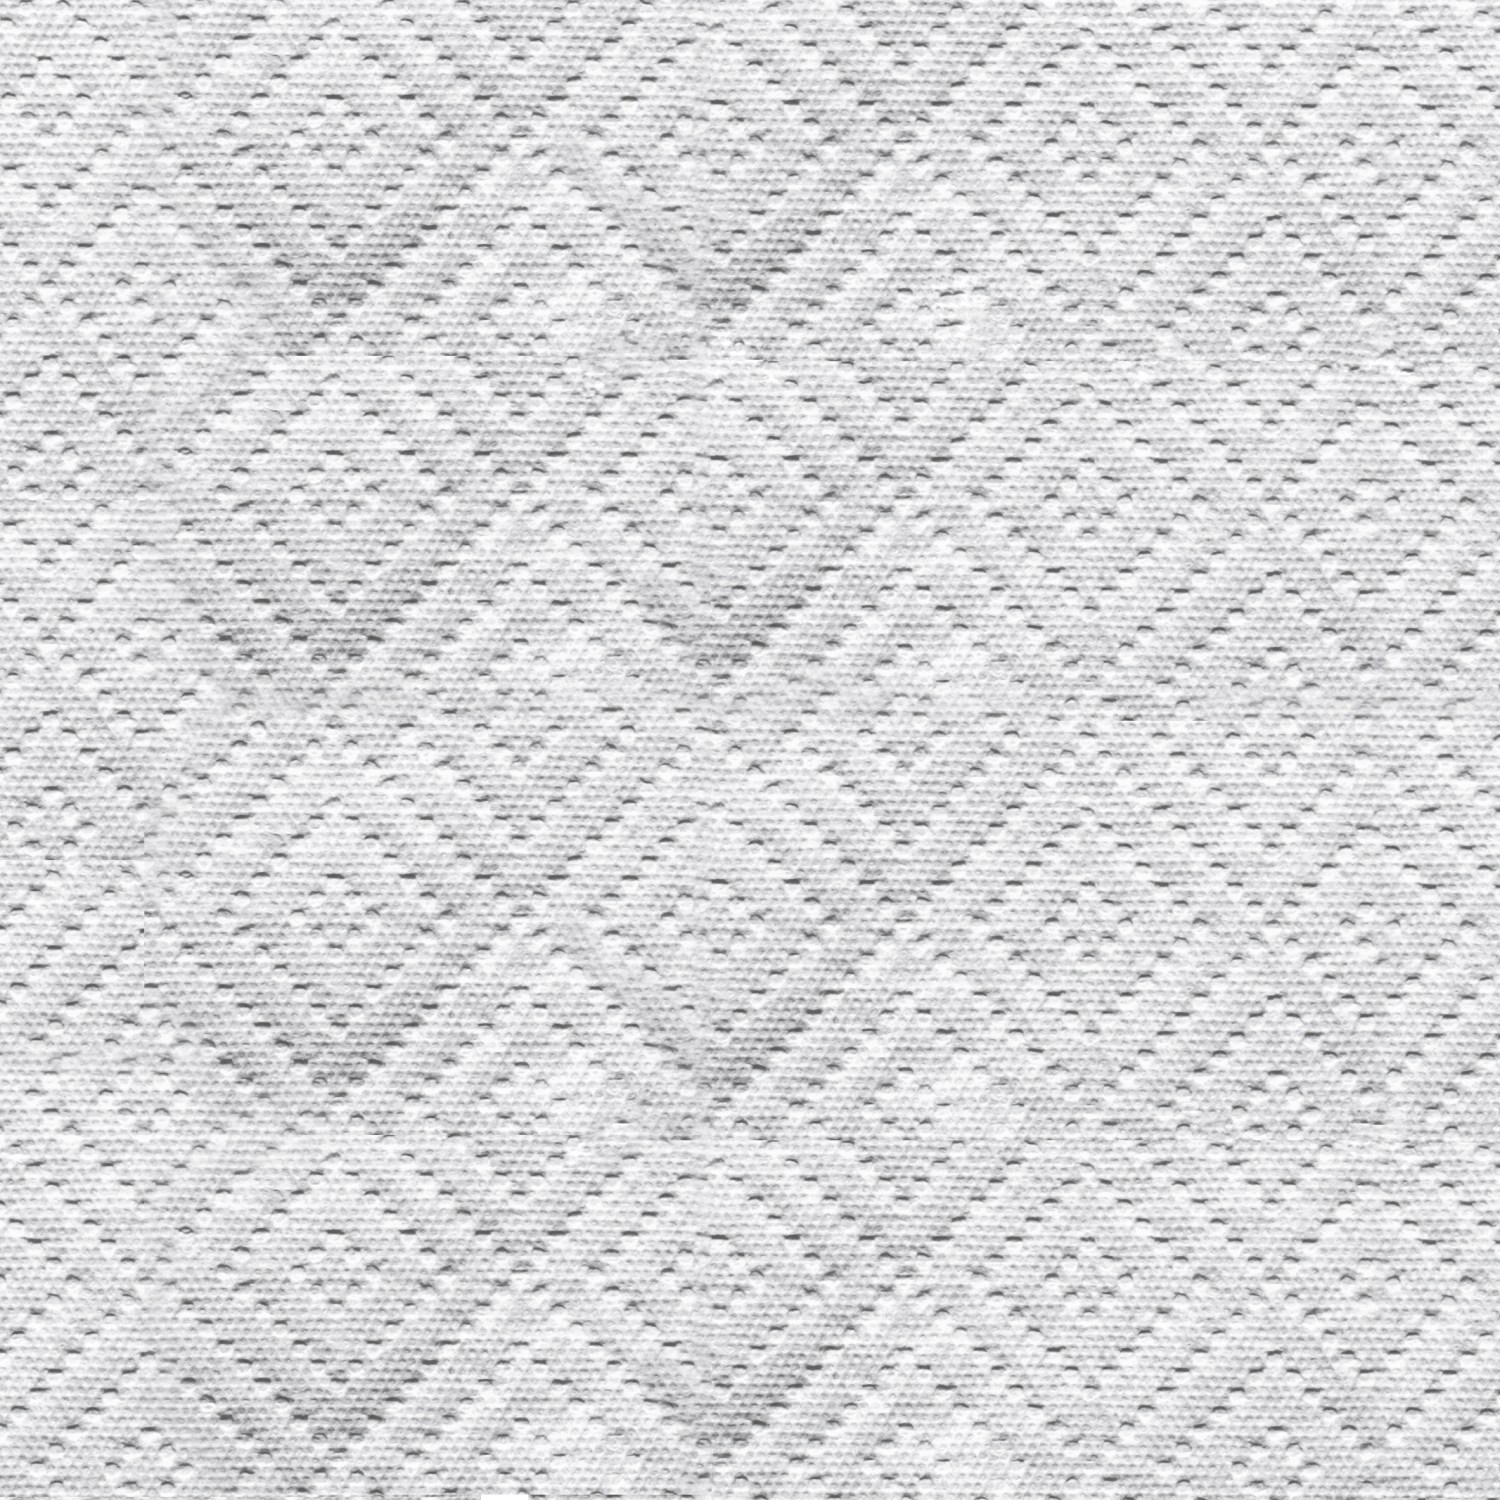 Closeup of a paper towel